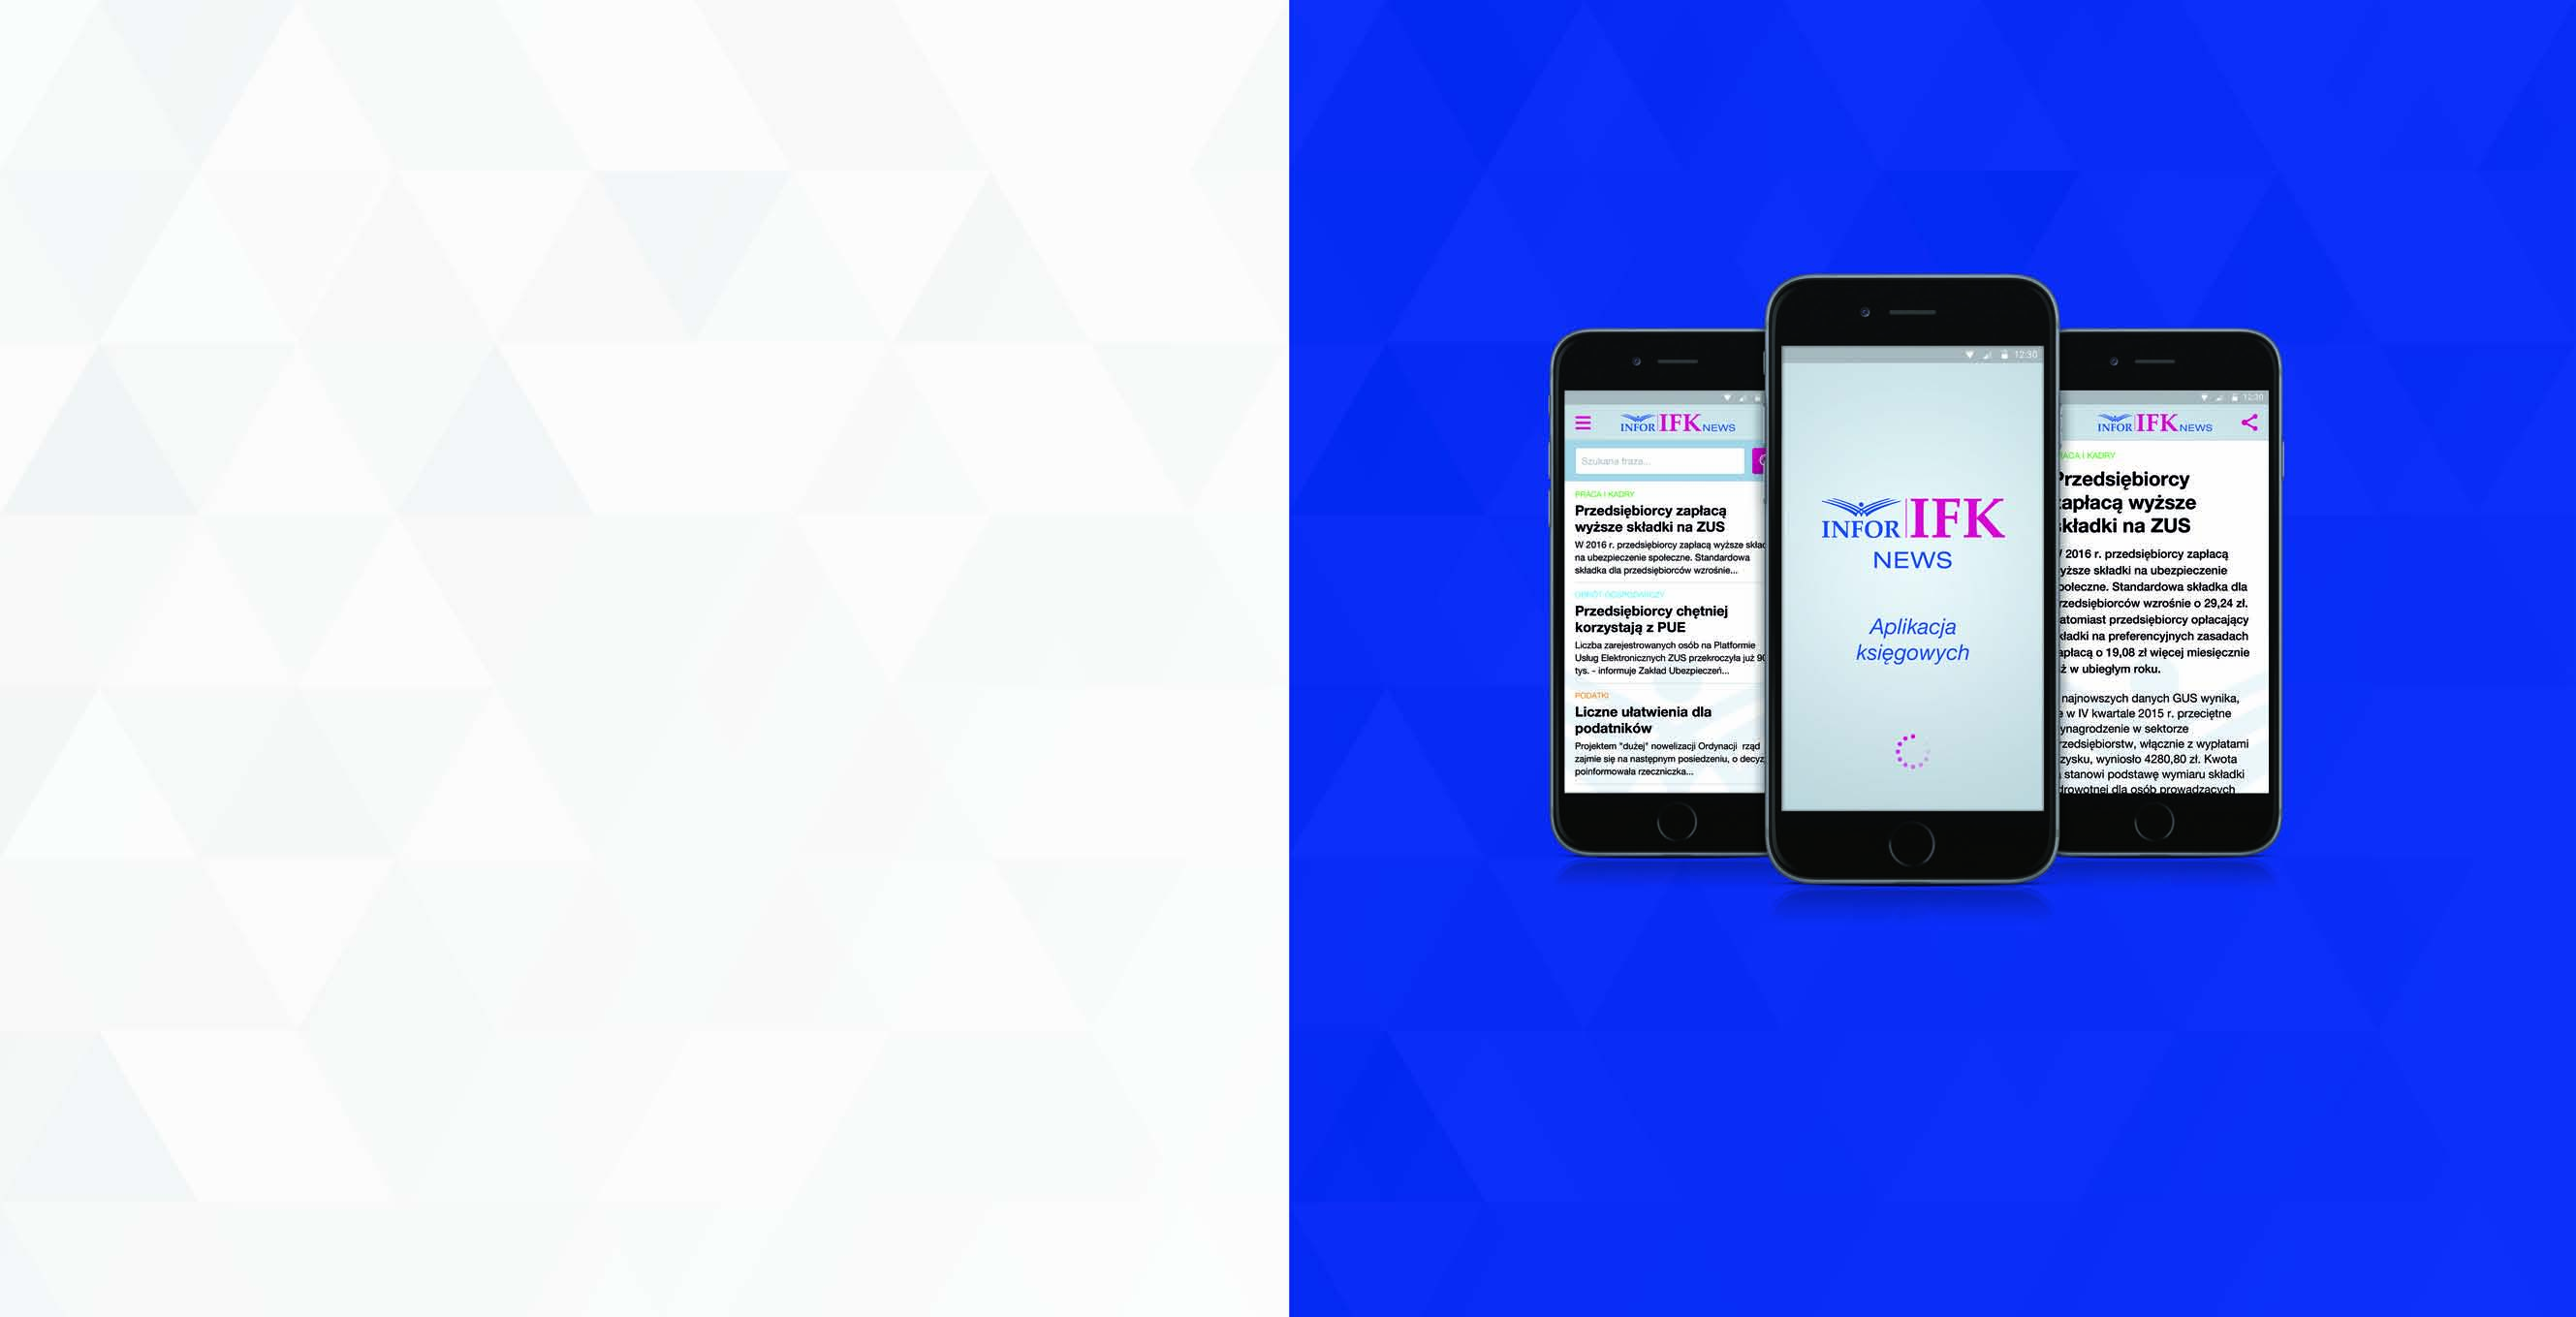 Aplikacja mobilna IFK NEWS Aplikacja mobilna Aplikacja mobilna przeznaczona dla księgowych oraz kadrowych. Zawiera codzienne aktualności prawne z zakresu podatków, prawa pracy i rachunkowości.